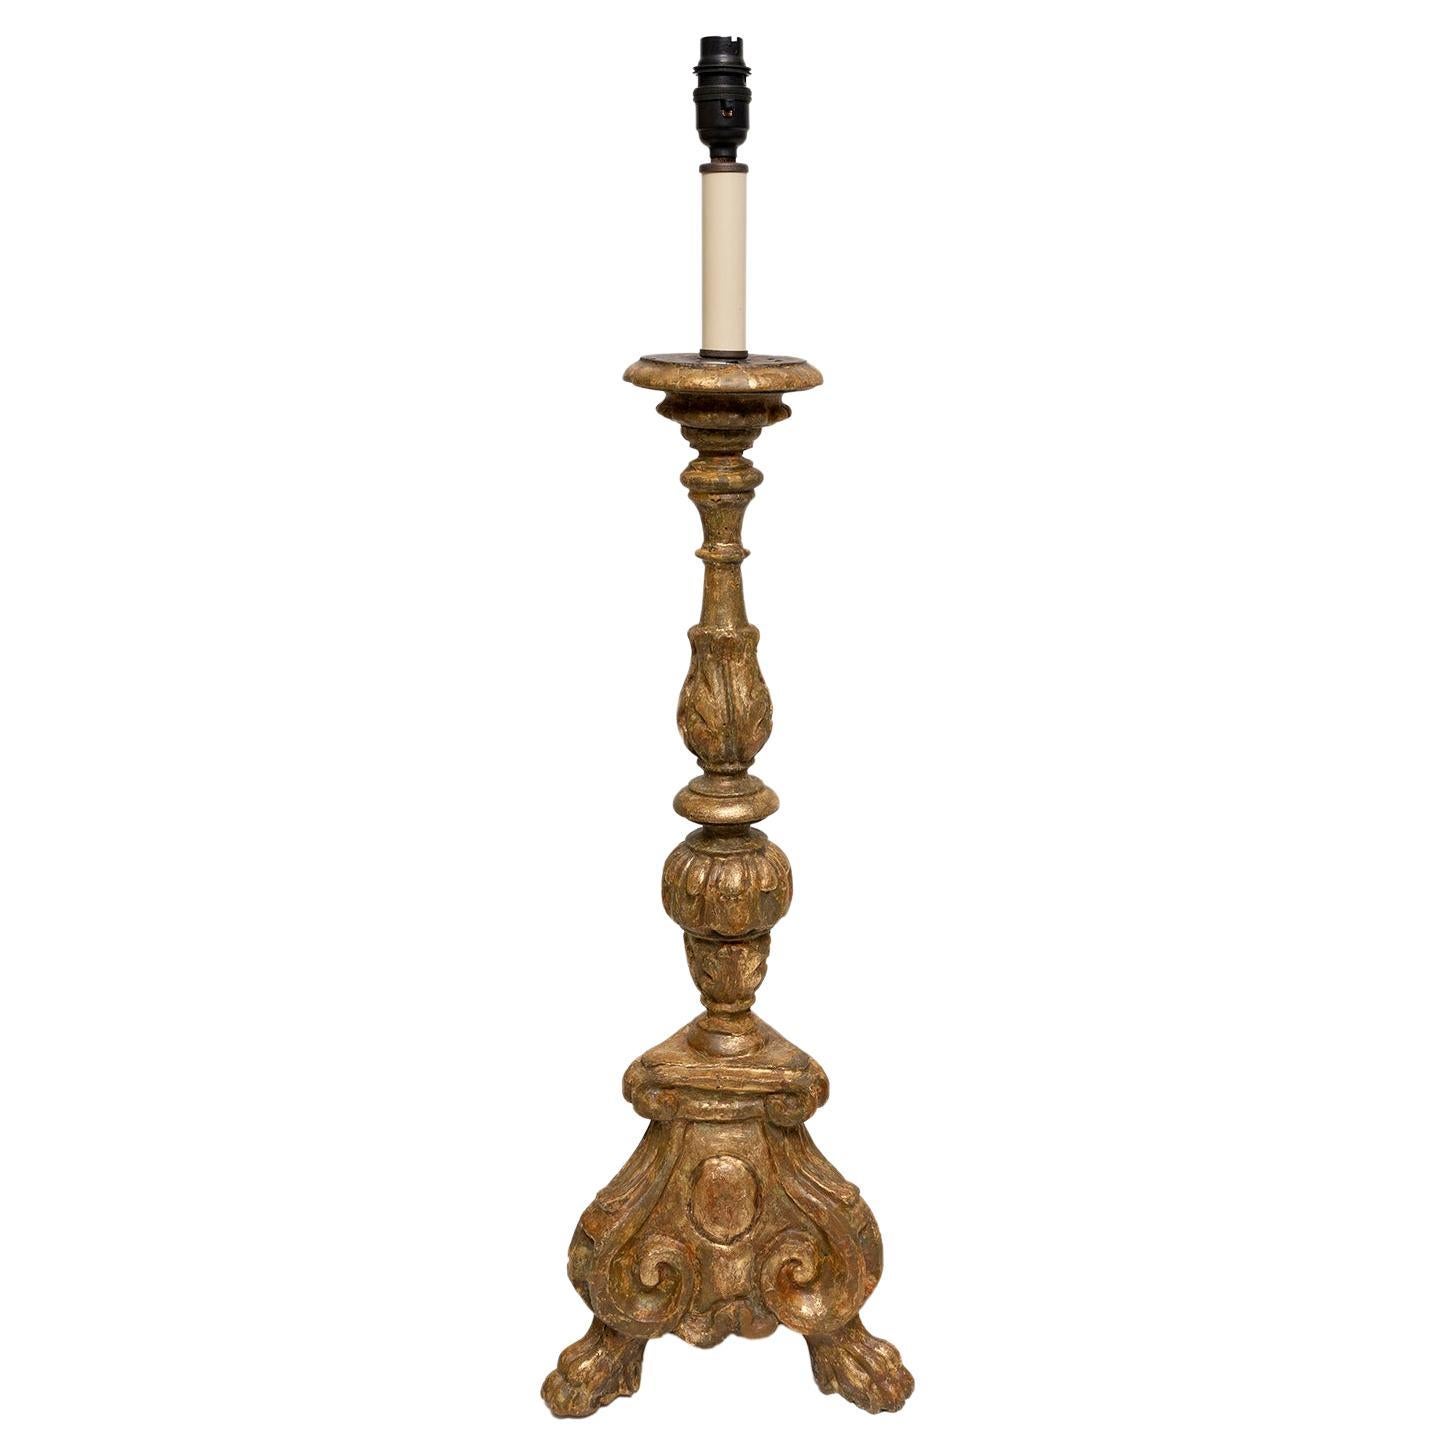 Lampe de table Bougeoir doré 18ème siècle Baroque Italien 81cm 32"" haut